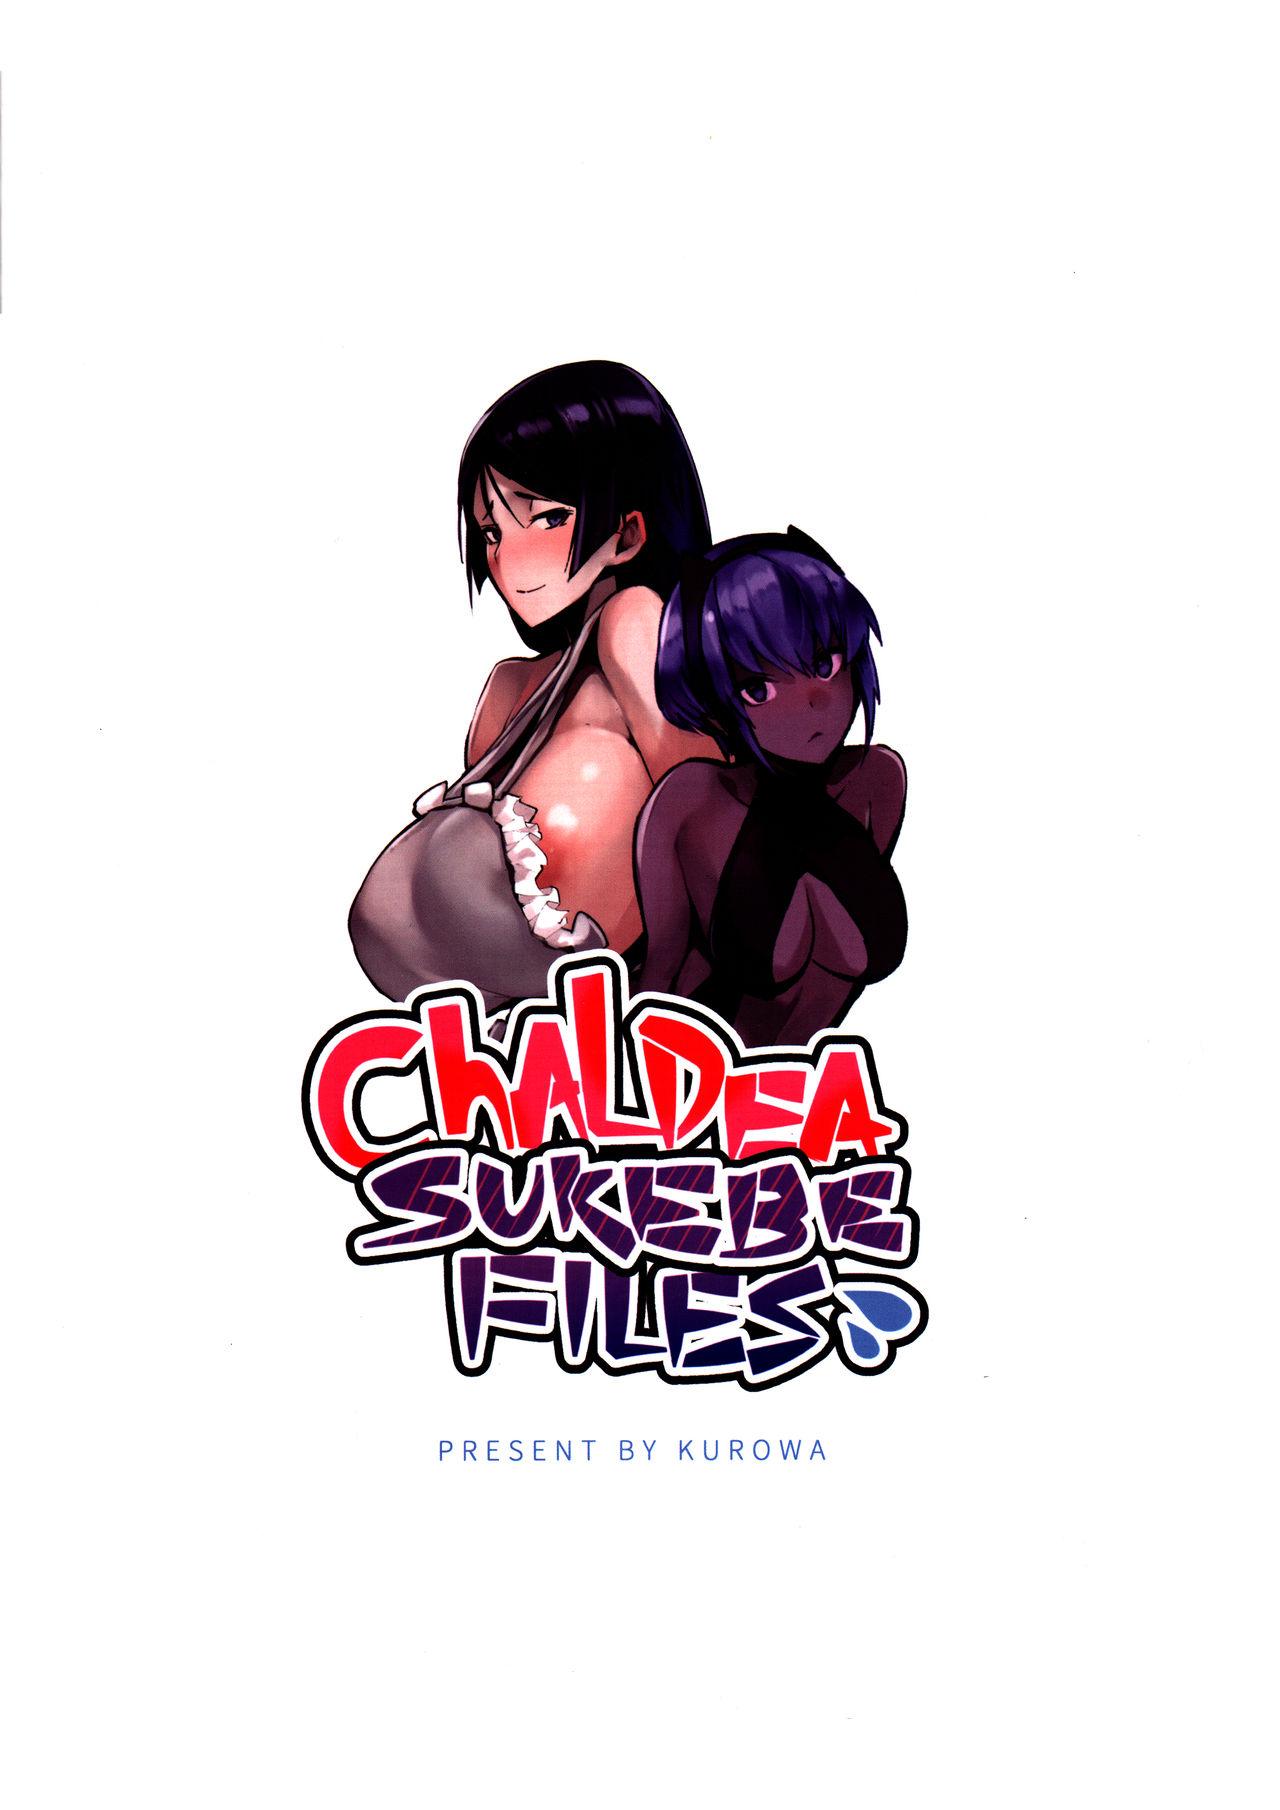 Chaldea Sukebe Files 16